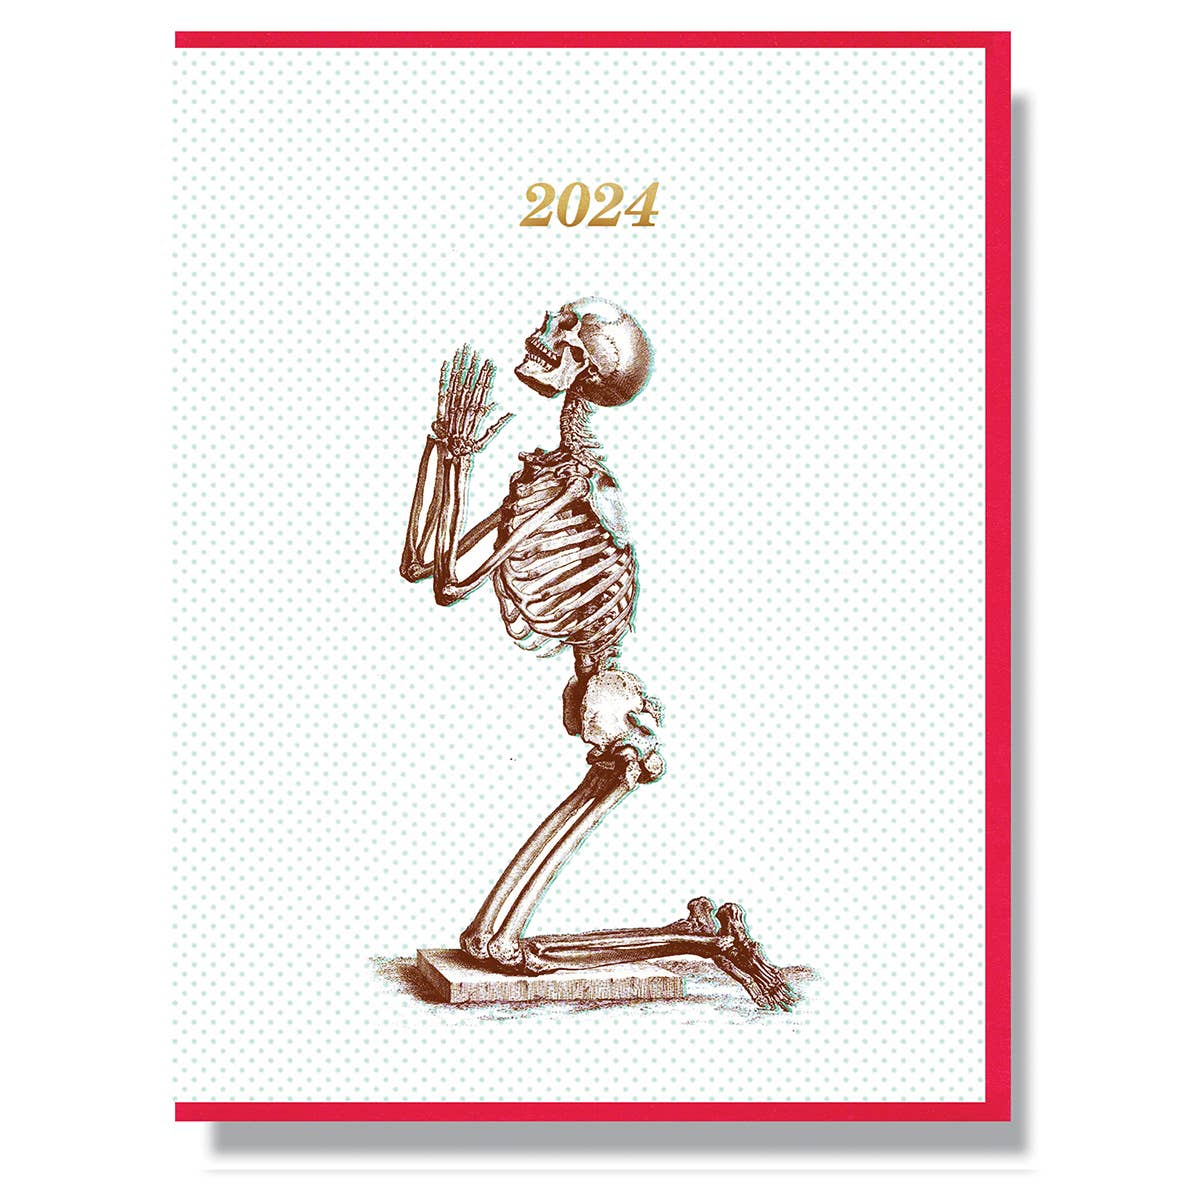 2024 Praying Skeleton Card